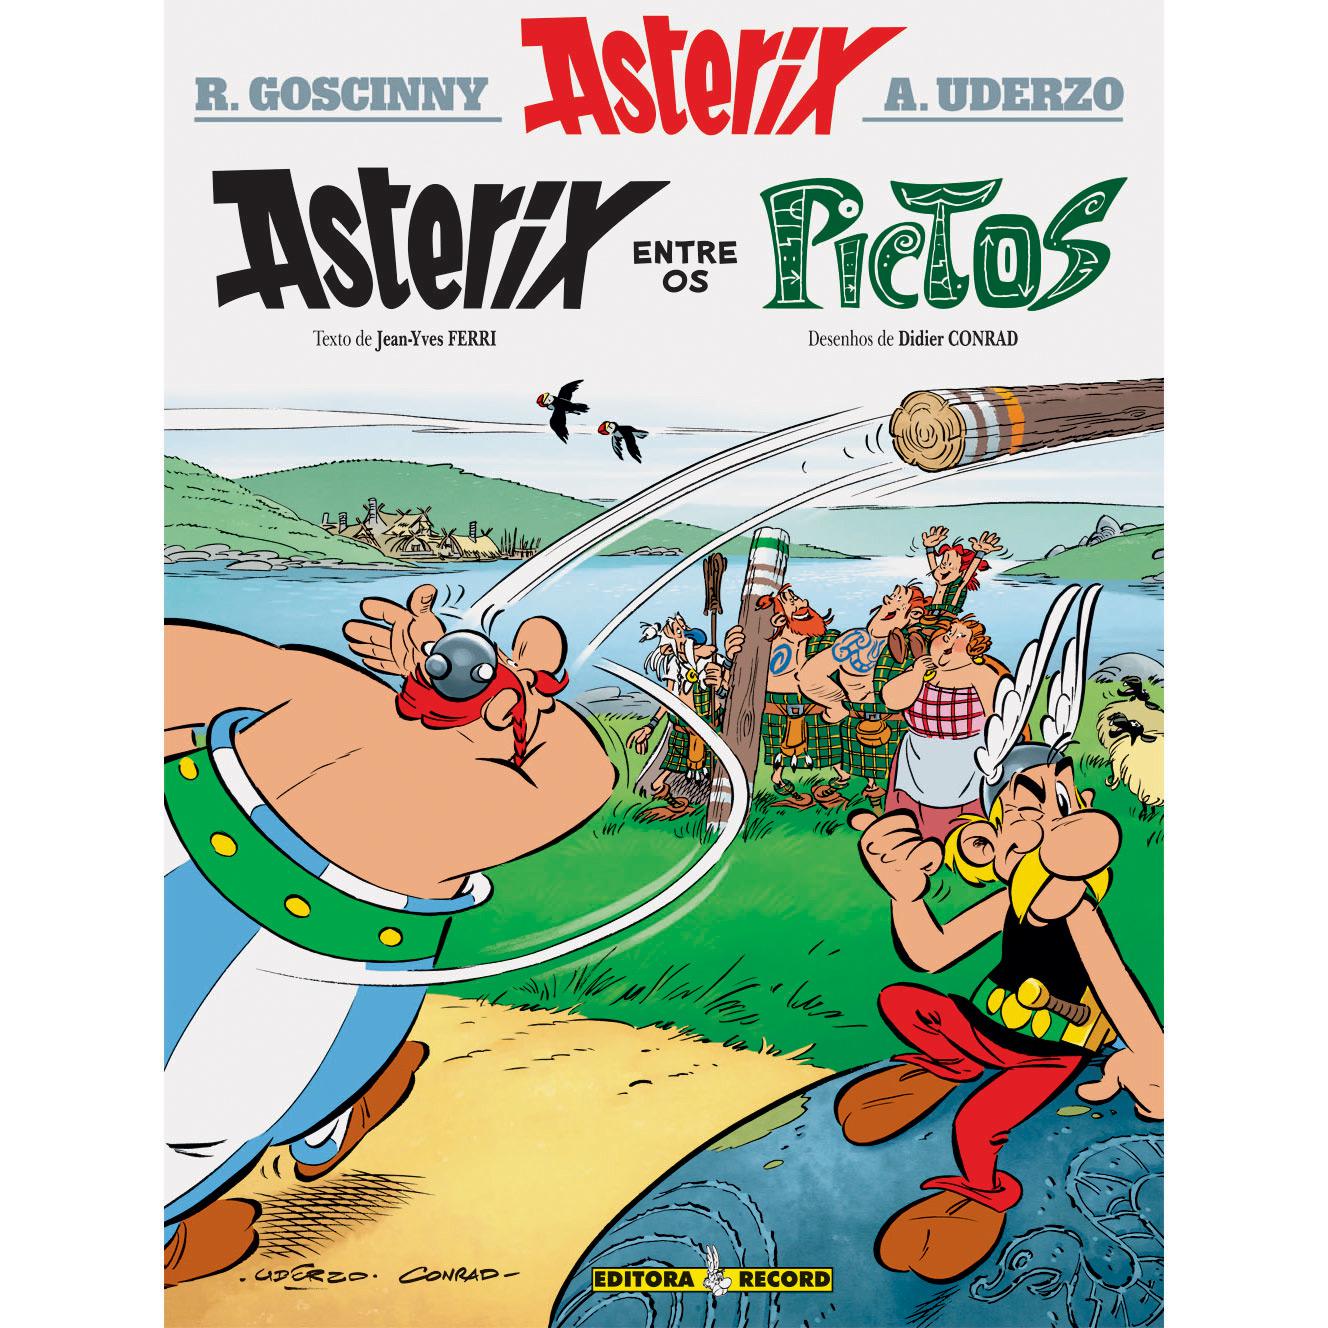 Livro - Asterix Entre os Pictos é bom? Vale a pena?